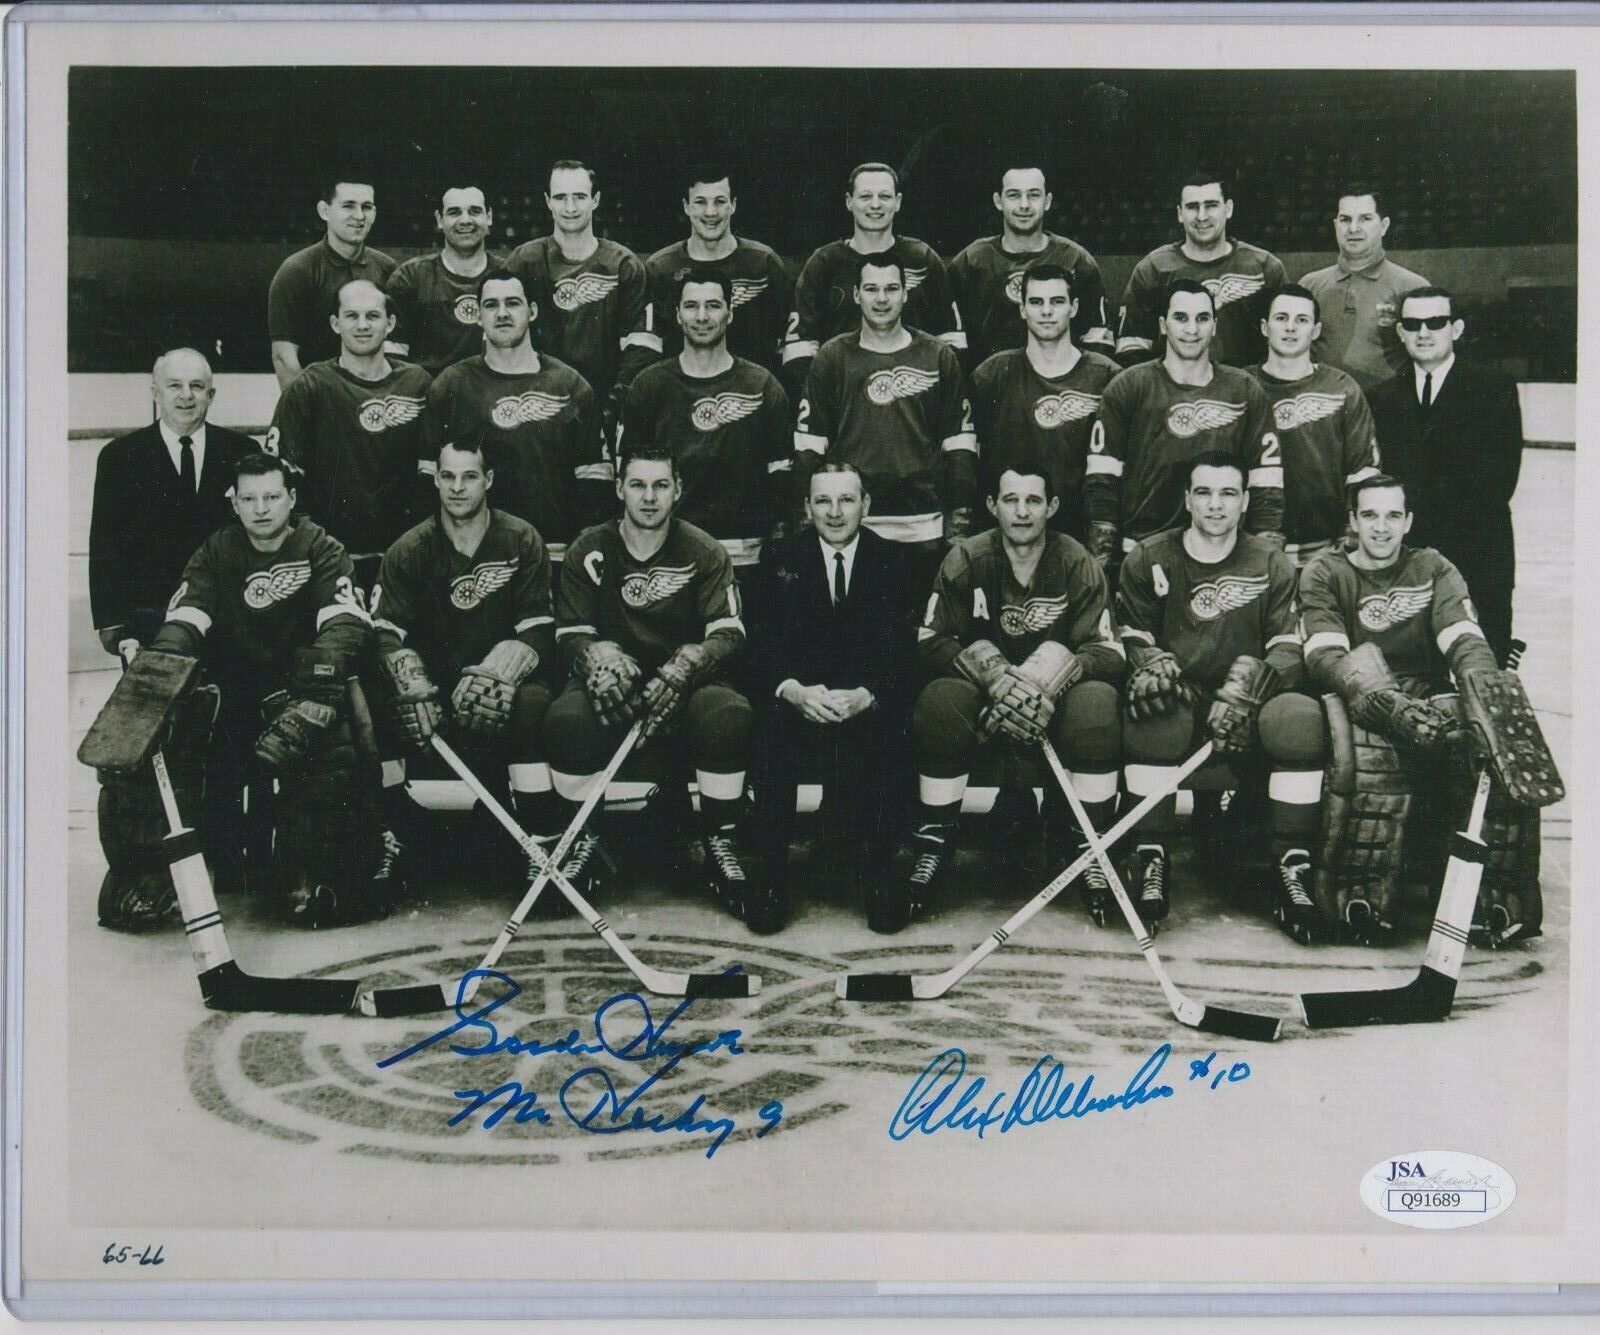 Gordie Howe Autographed Signed Alex Delvecchio 1965-66 Team Photo 8X10 JSA